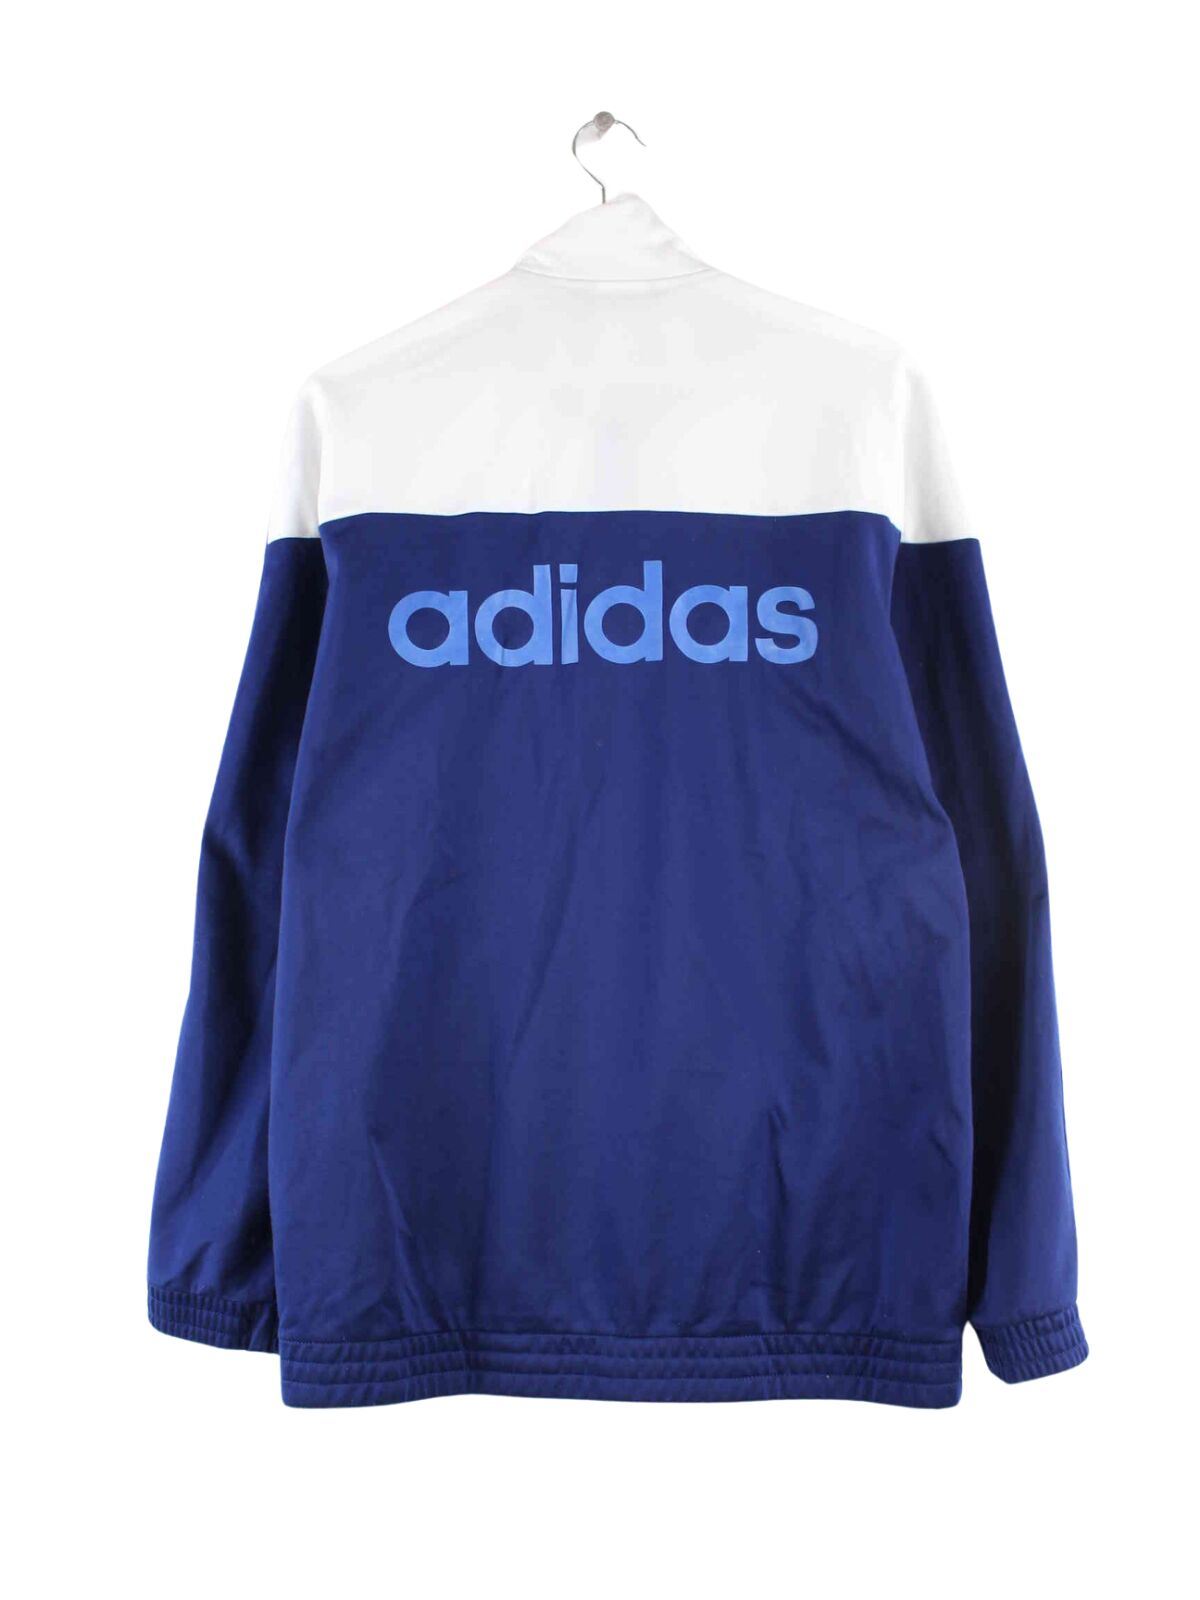 Adidas Print Trainingsjacke Blau L (back image)